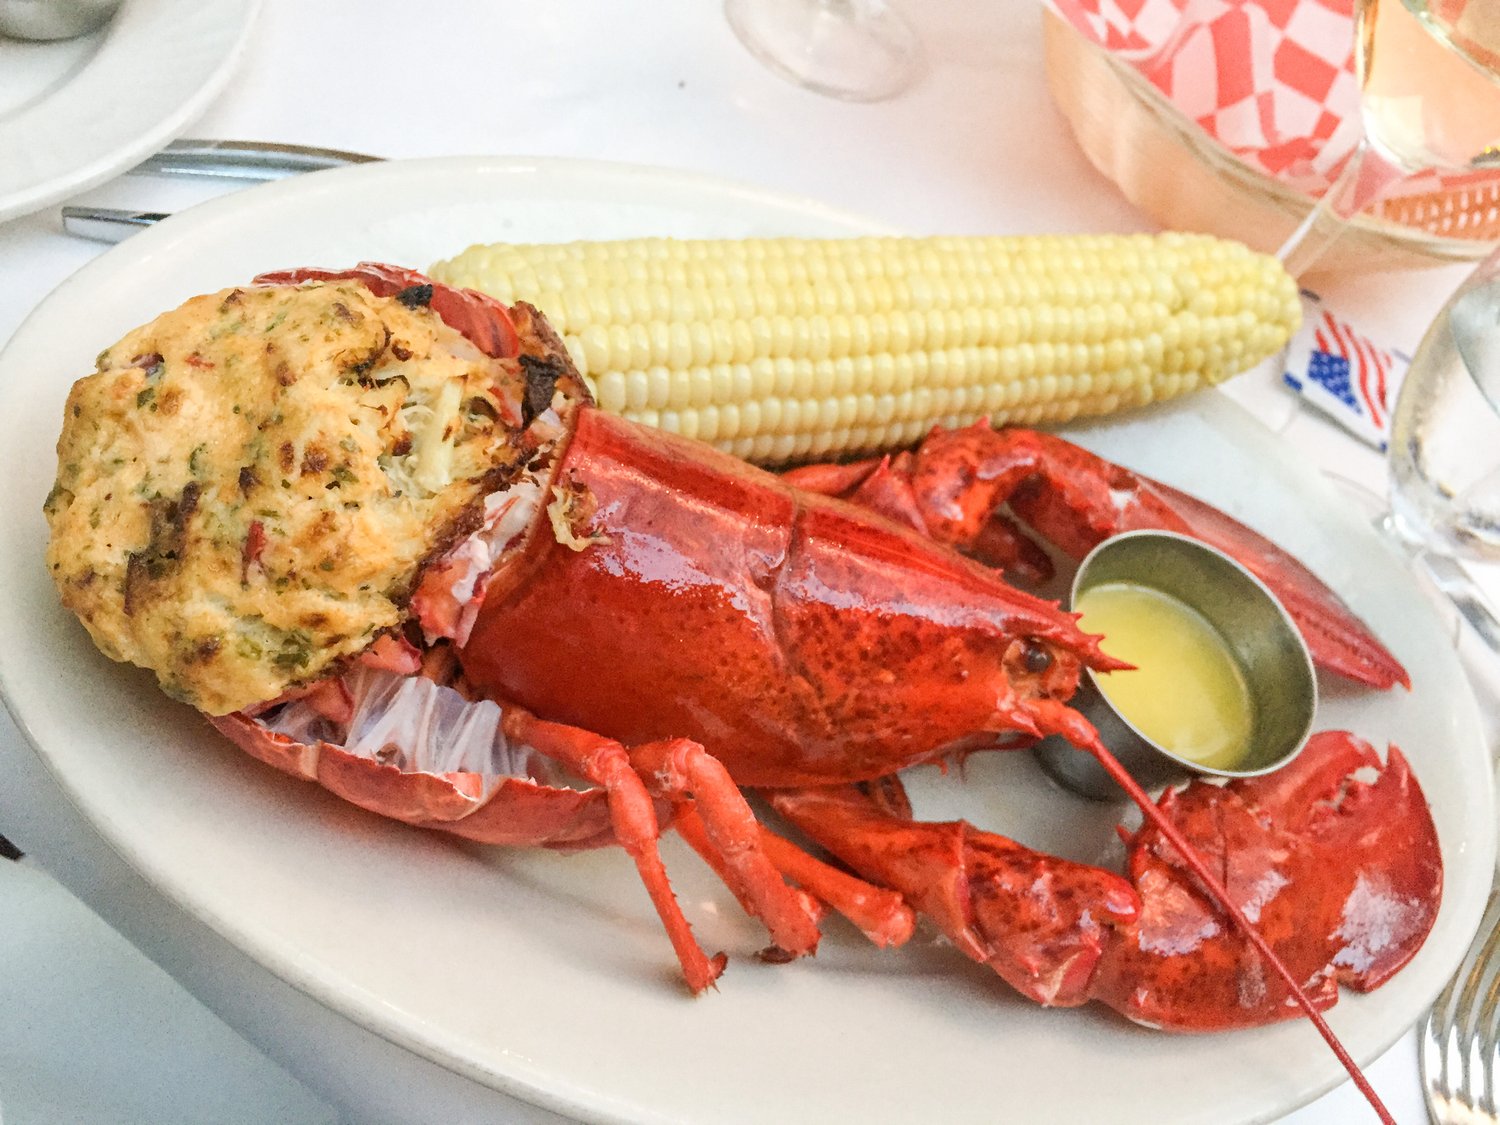 Gertrude's lobster